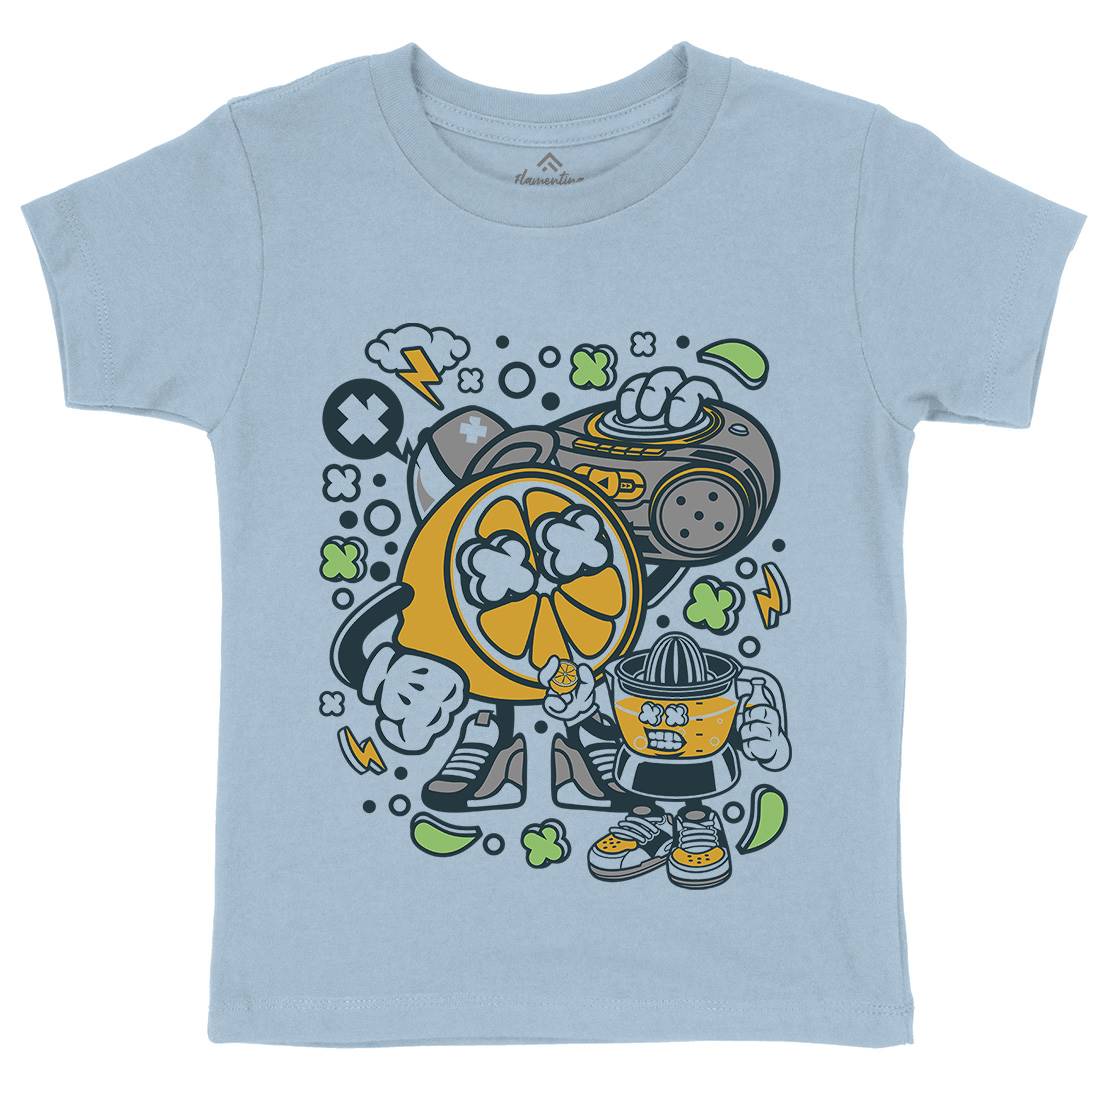 Orange Boombox Kids Crew Neck T-Shirt Music C596